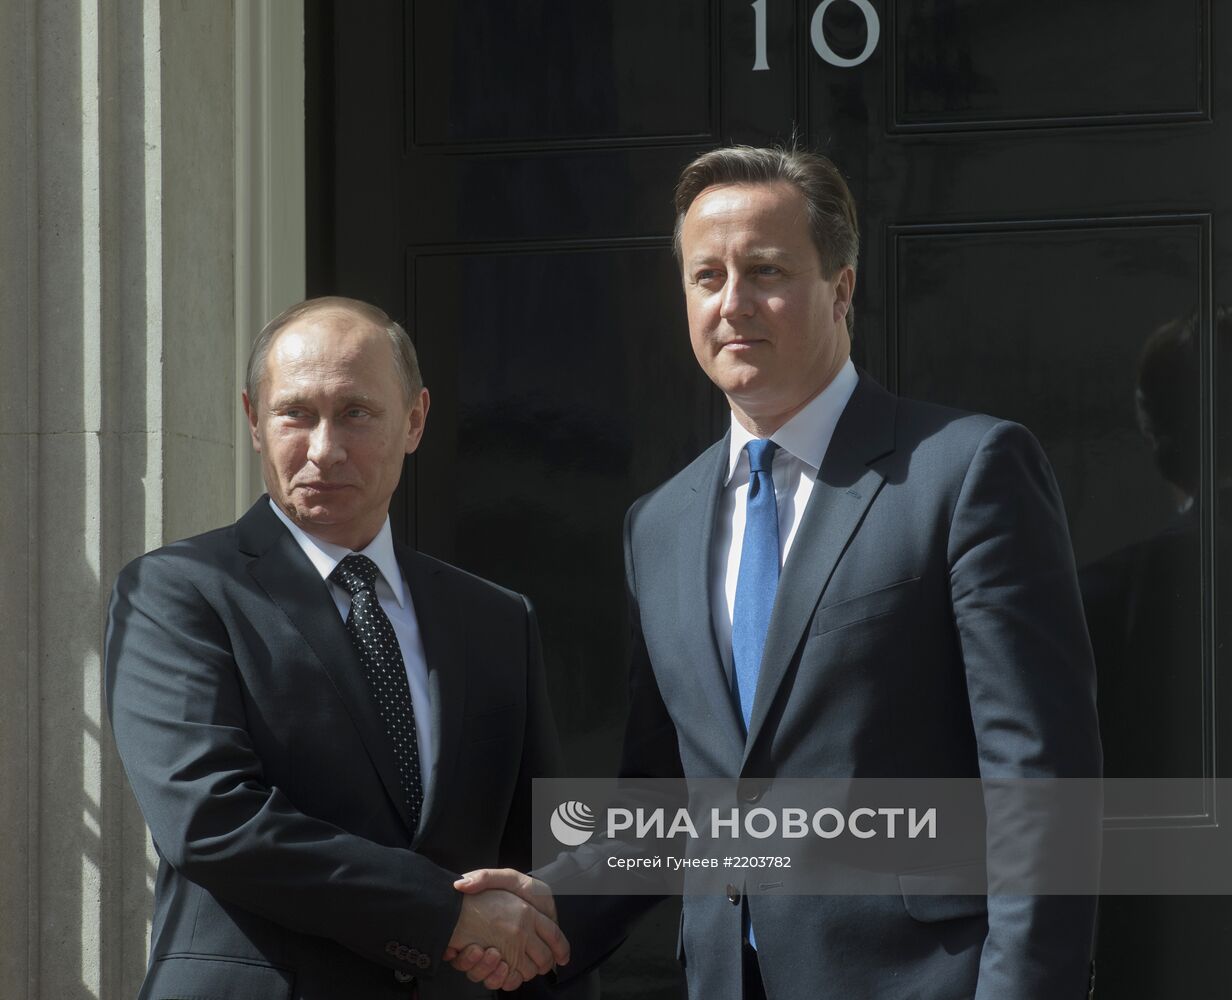 Рабочий визит В.Путина в Великобританию